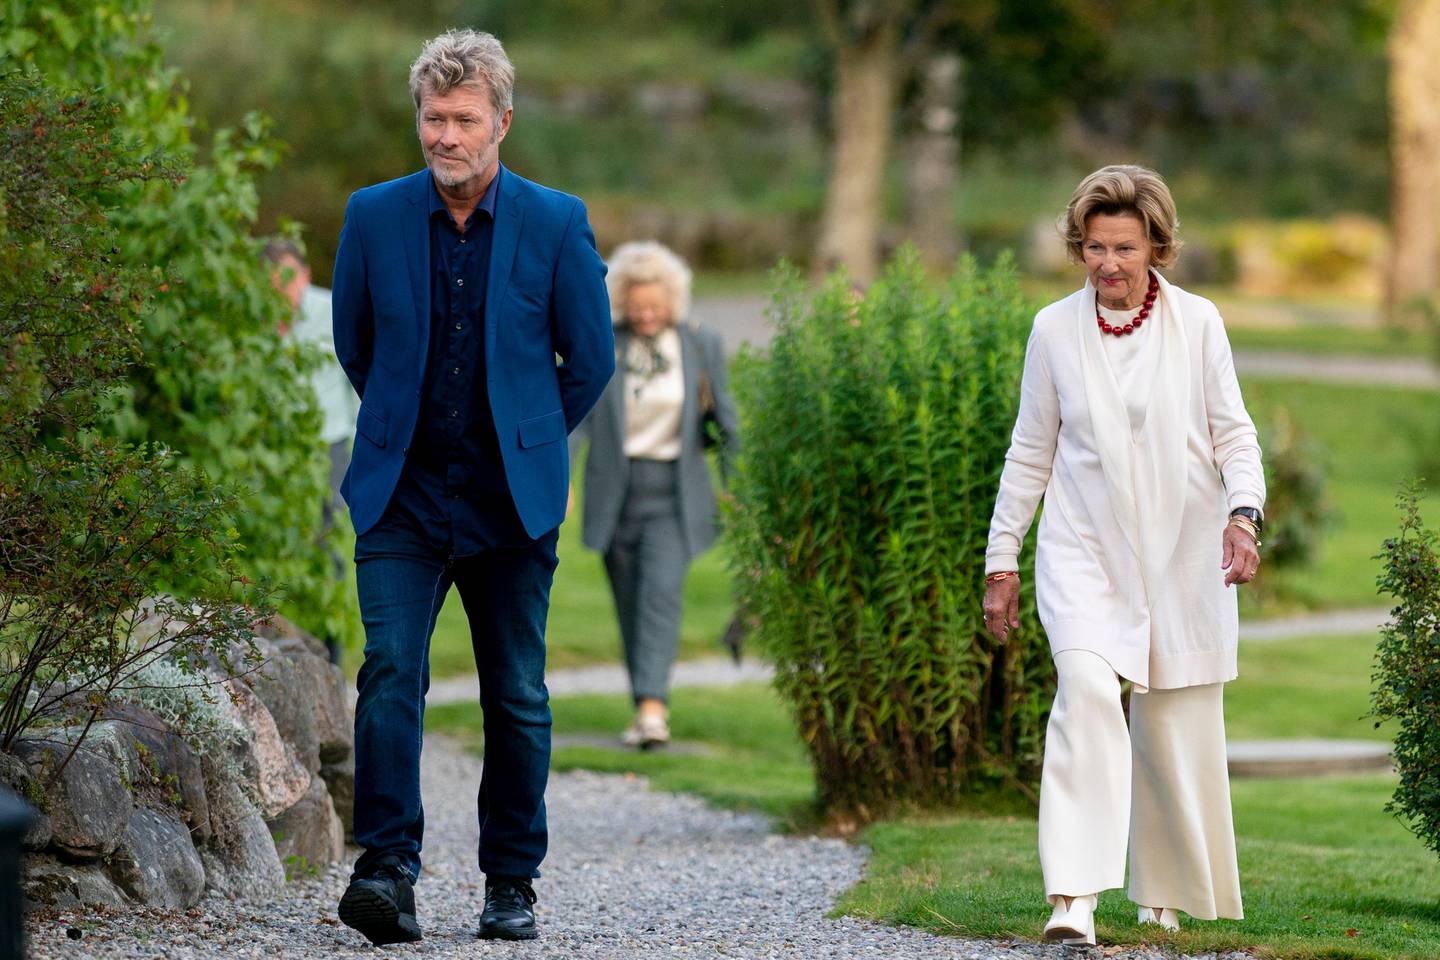 Greåker 20200827. 
Dronning Sonja og Magne Furuholmen er tilstede på Soli Brug i Greåker hvor de viser frem sine nye kunstutstillinger.
Foto: Fredrik Hagen / NTB scanpix